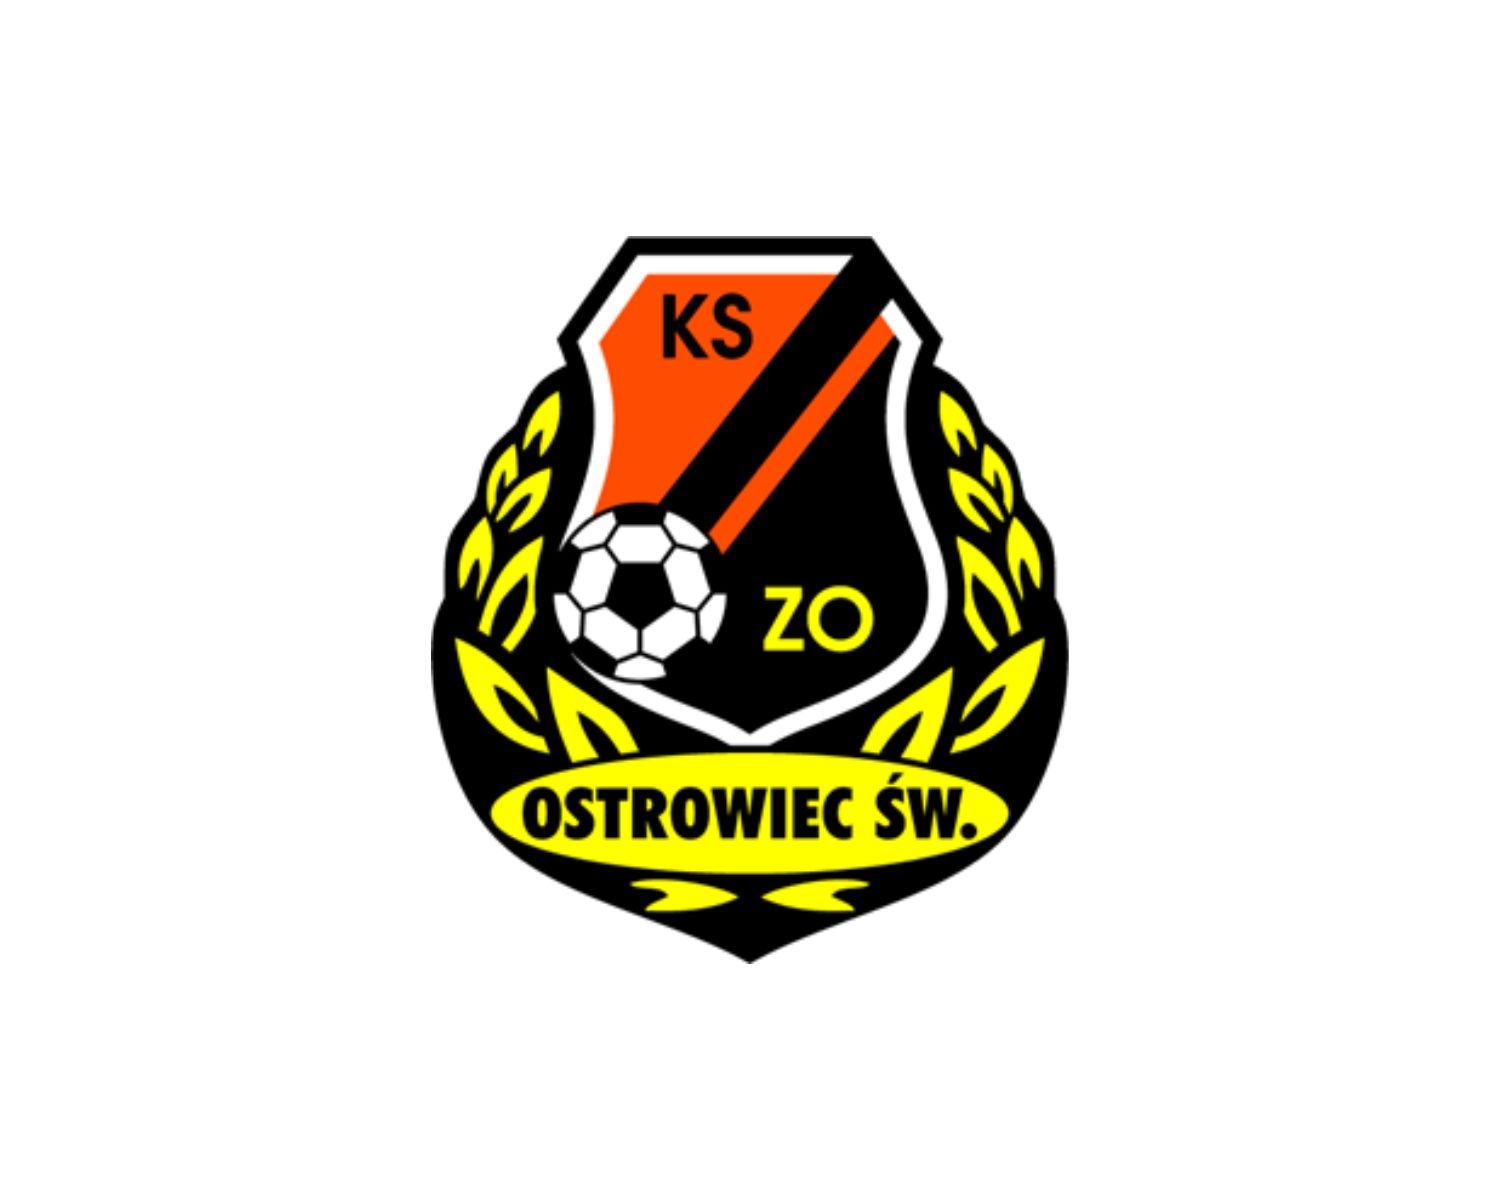 kszo-ostrowiec-swietokrzyski-25-football-club-facts